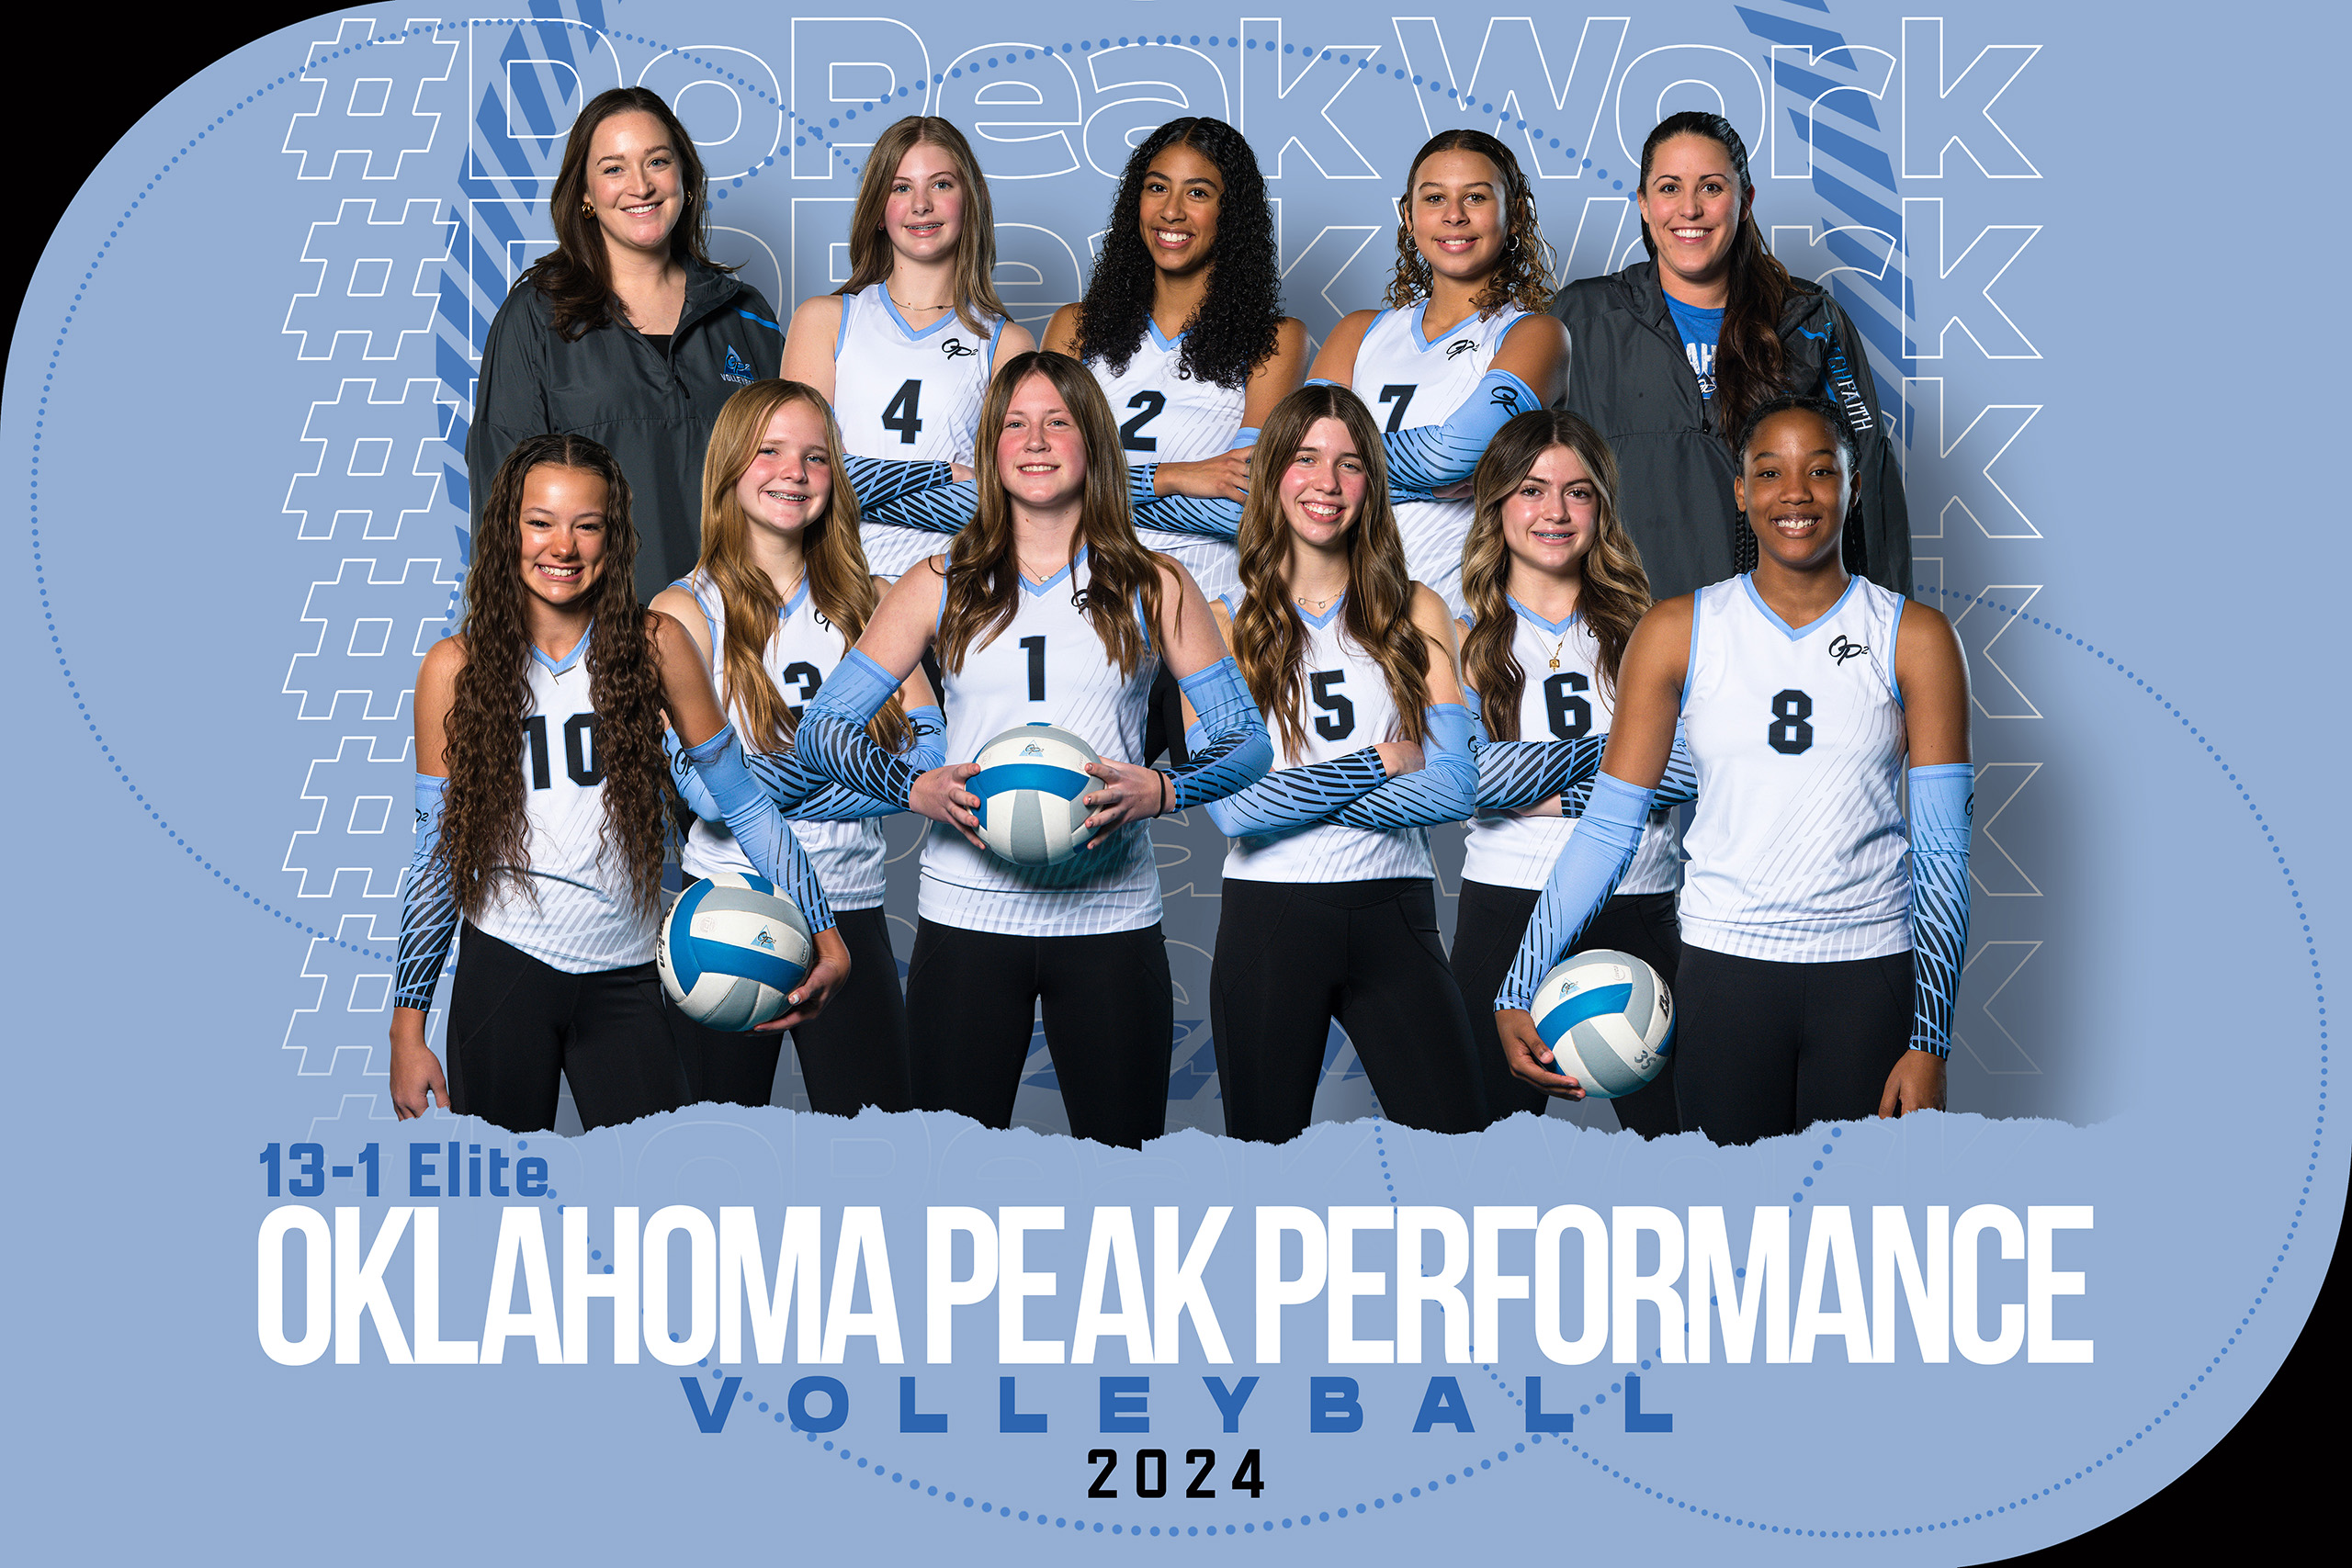 2024 Oklahoma Peak Performance 13-1